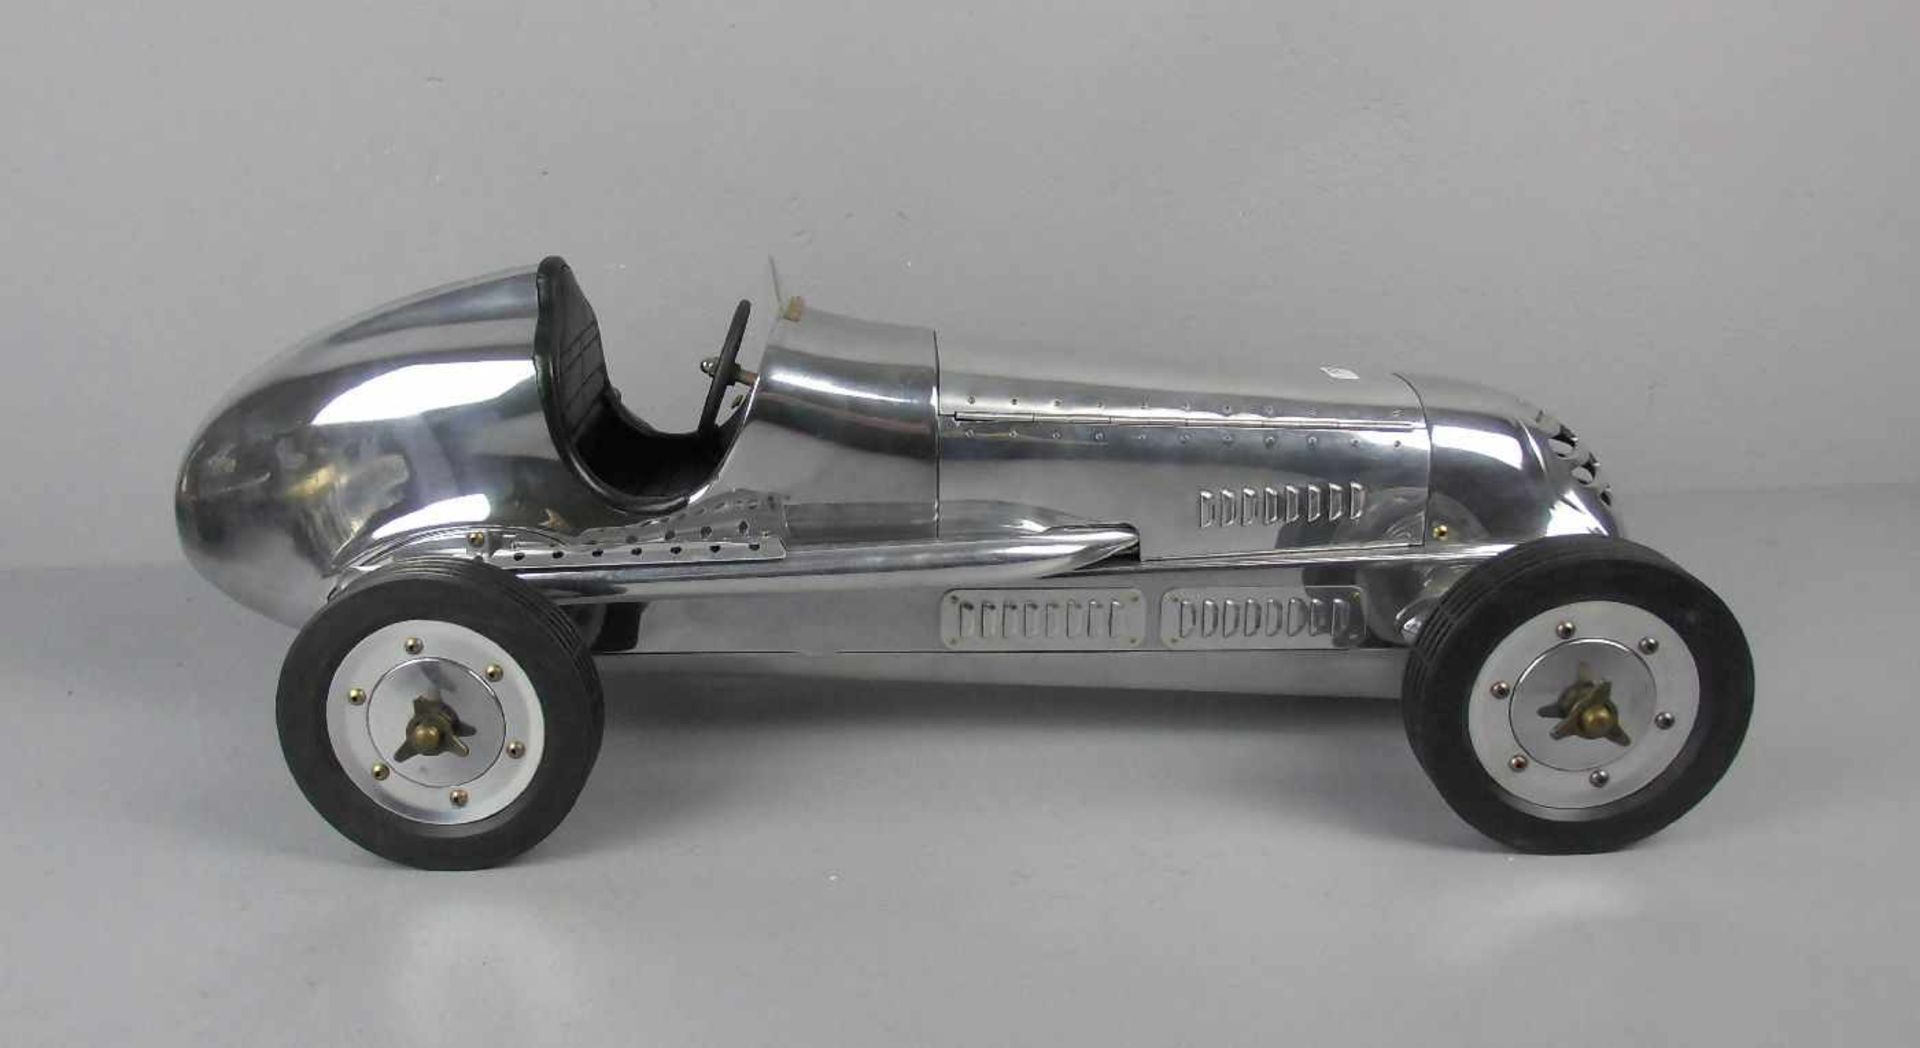 MODELL - AUTO: Mercedes Silberpfeil W 25 von 1934 / Grand Prix Model Car, unter dem Stand gemarkt " - Image 2 of 6